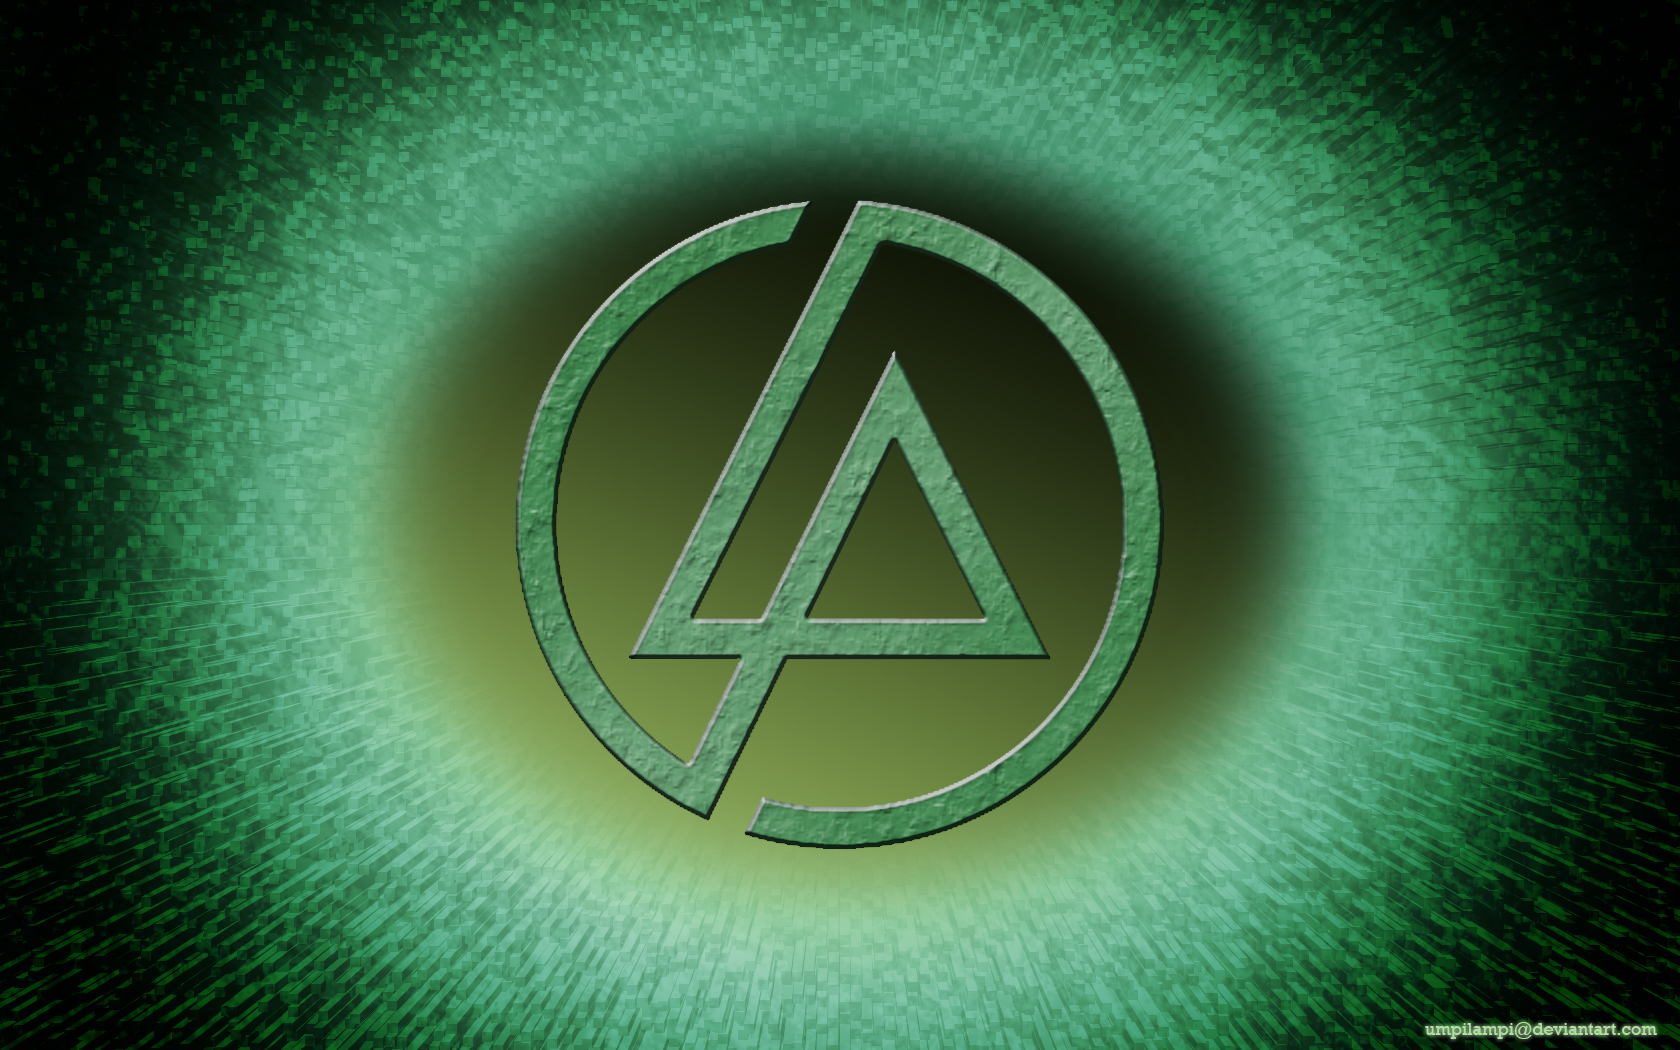 Linkin Park Wallpaper By Umpilampi